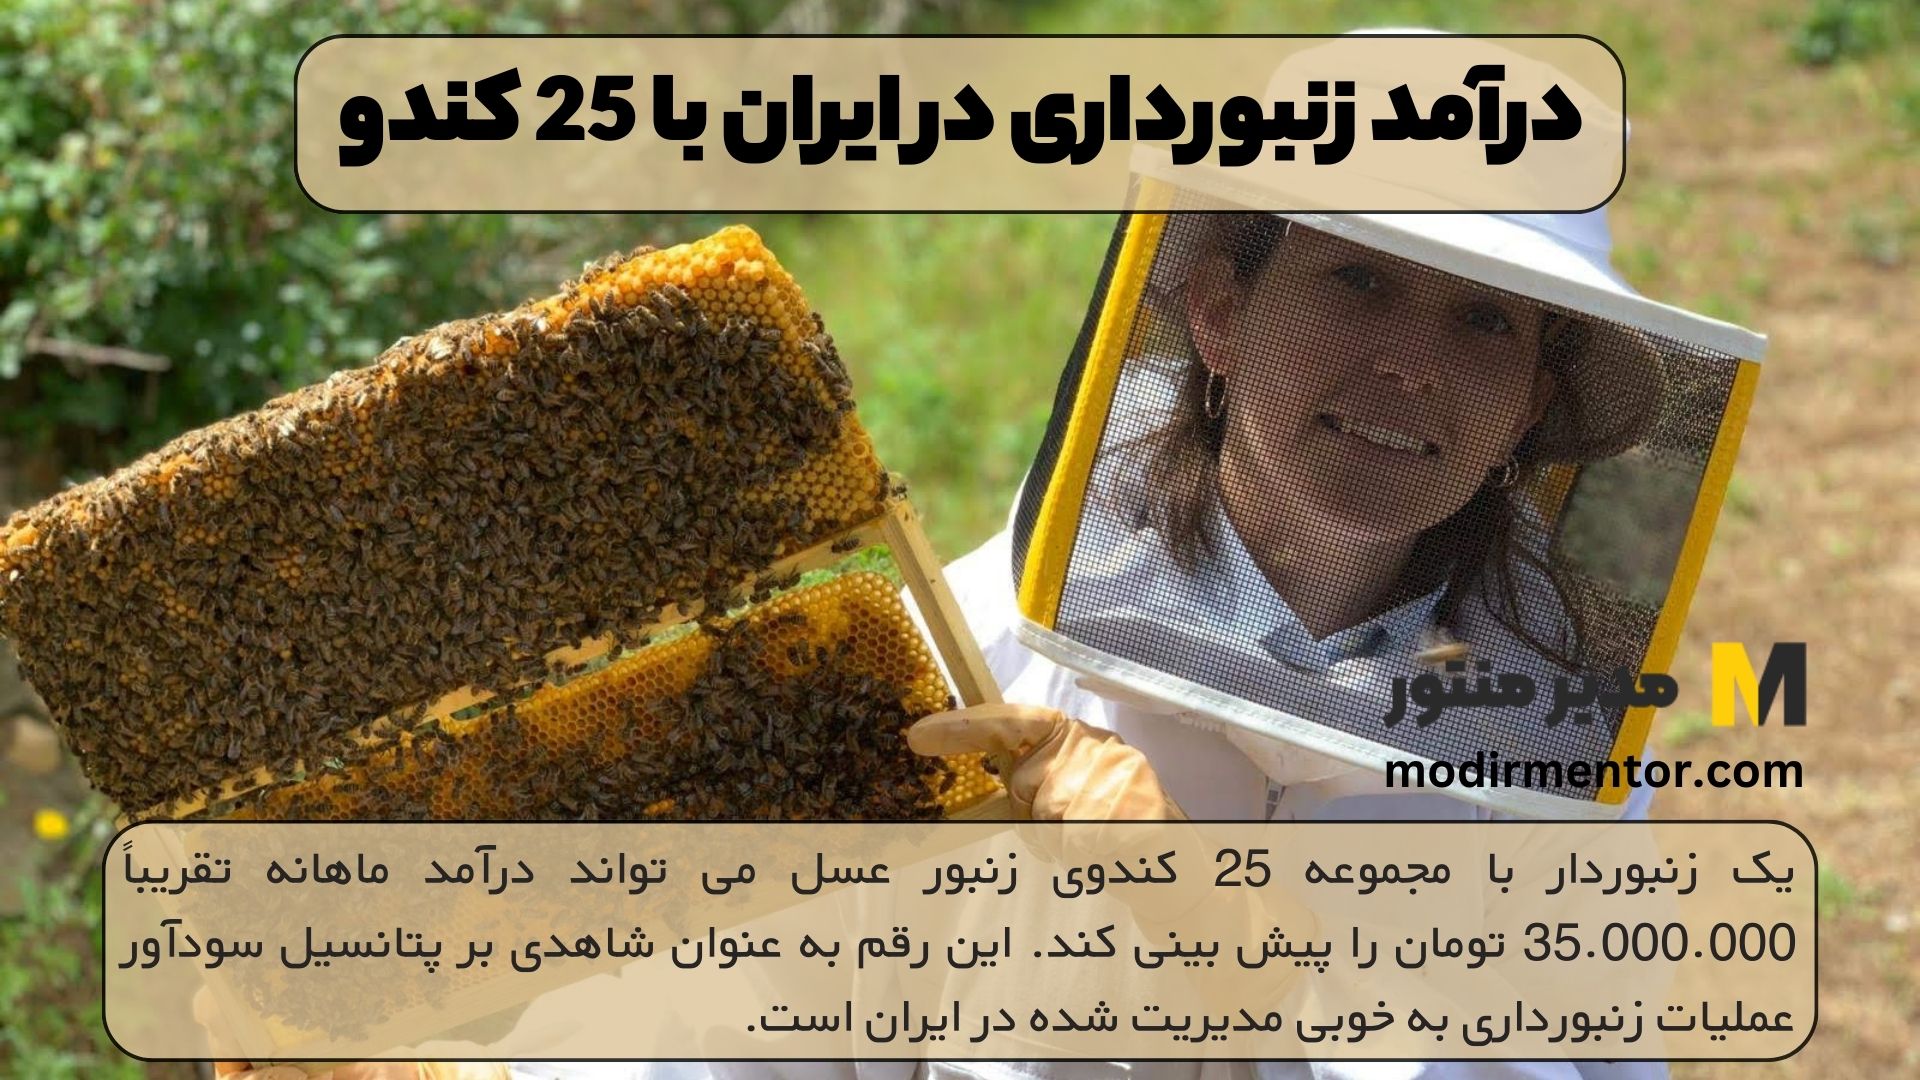 درآمد زنبورداری در ایران با 25 کندو